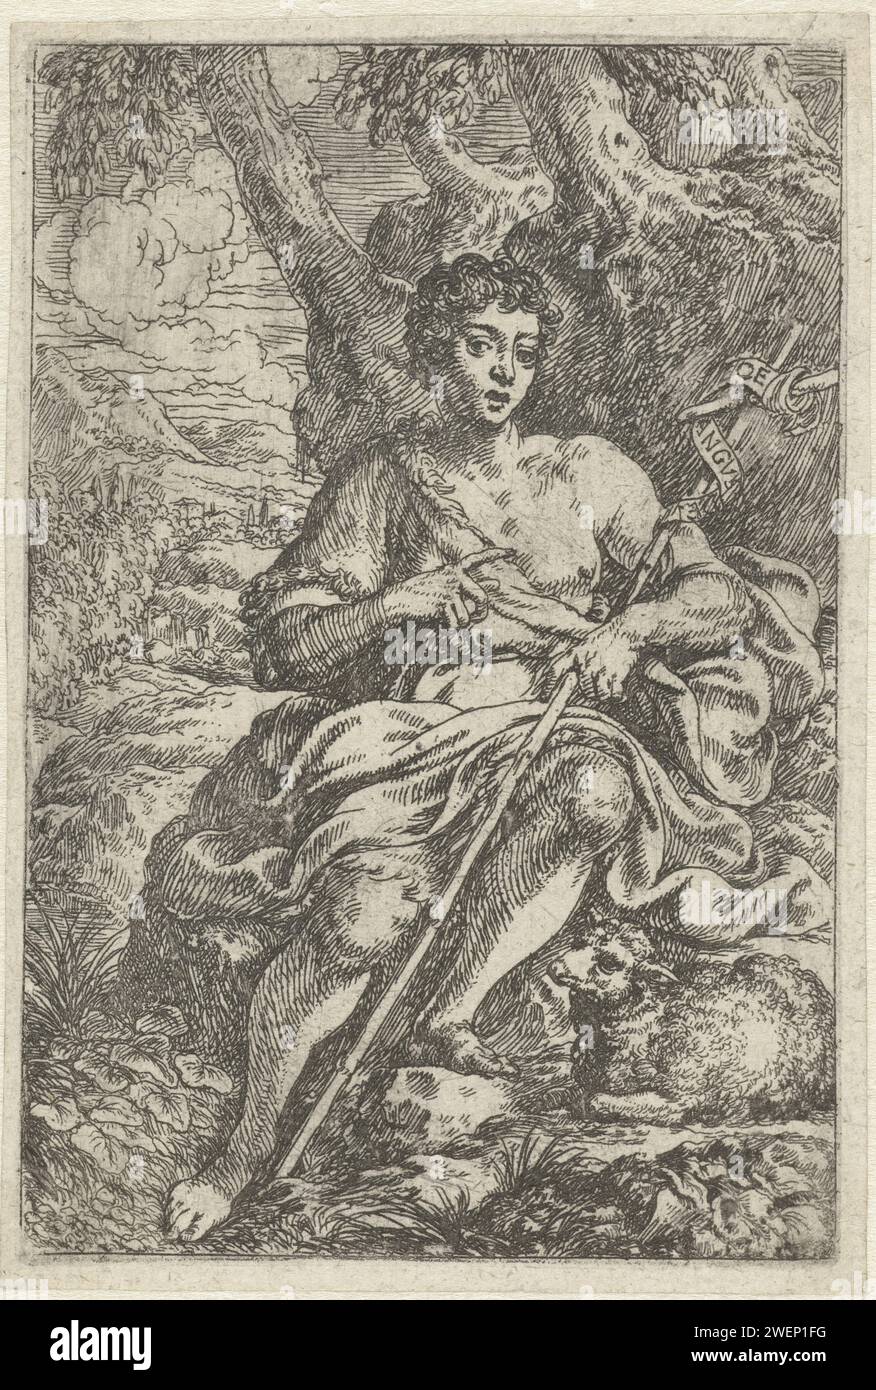 Johannes de Boper, 1634 - 1698 imprimer Jean le Baptiste assis dans un paysage, son bâton reposant sur son bras, à ses pieds il y a un agneau. Gravure de papier Jean le Baptiste ; attributs possibles : livre, croix de roseau, coupe baptismale, nid d'abeille, agneau, personnel Banque D'Images